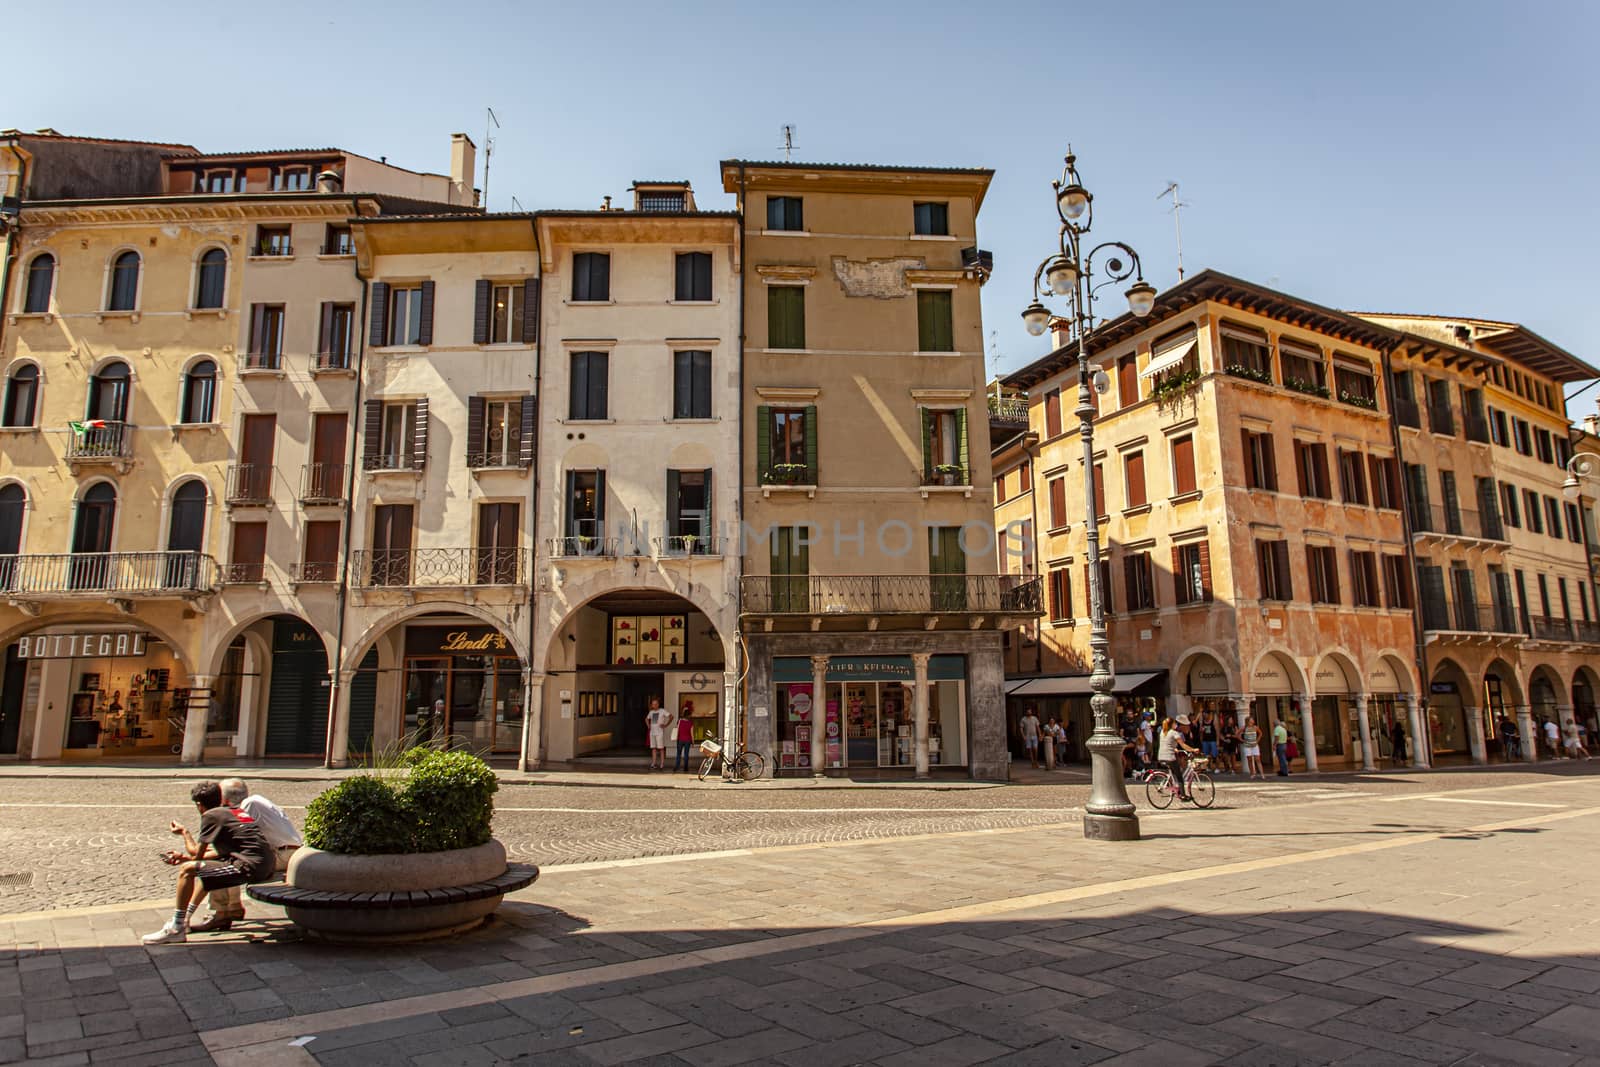 Piazza dei Signori in Treviso in Italy 11 by pippocarlot